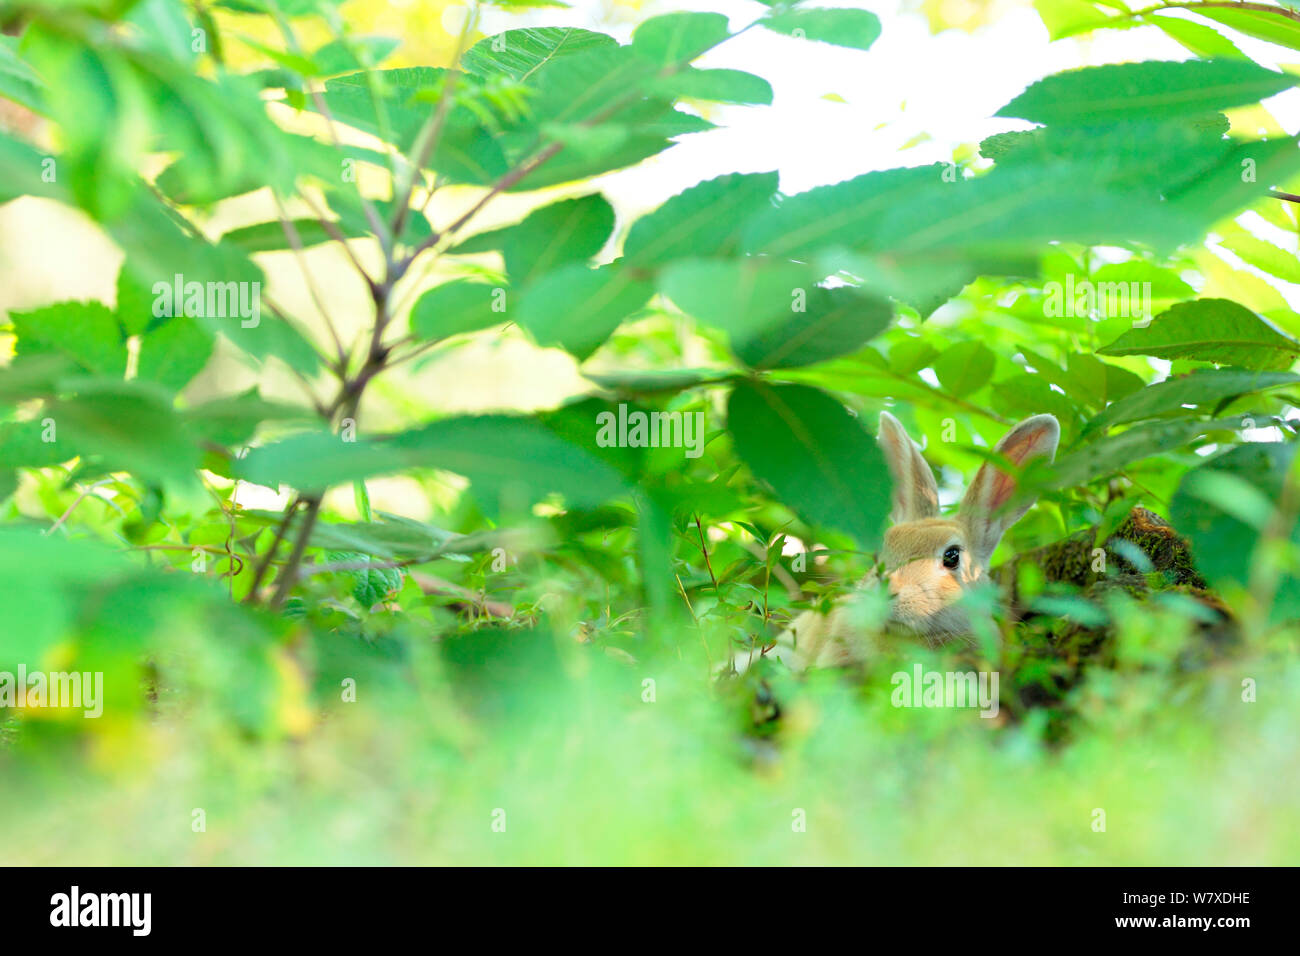 Les sauvages lapin (Oryctolagus cuniculus) reposant dans la végétation, l'Île Okunojima, également connu sous le nom de Rabbit Island, Hiroshima, Japon. Banque D'Images